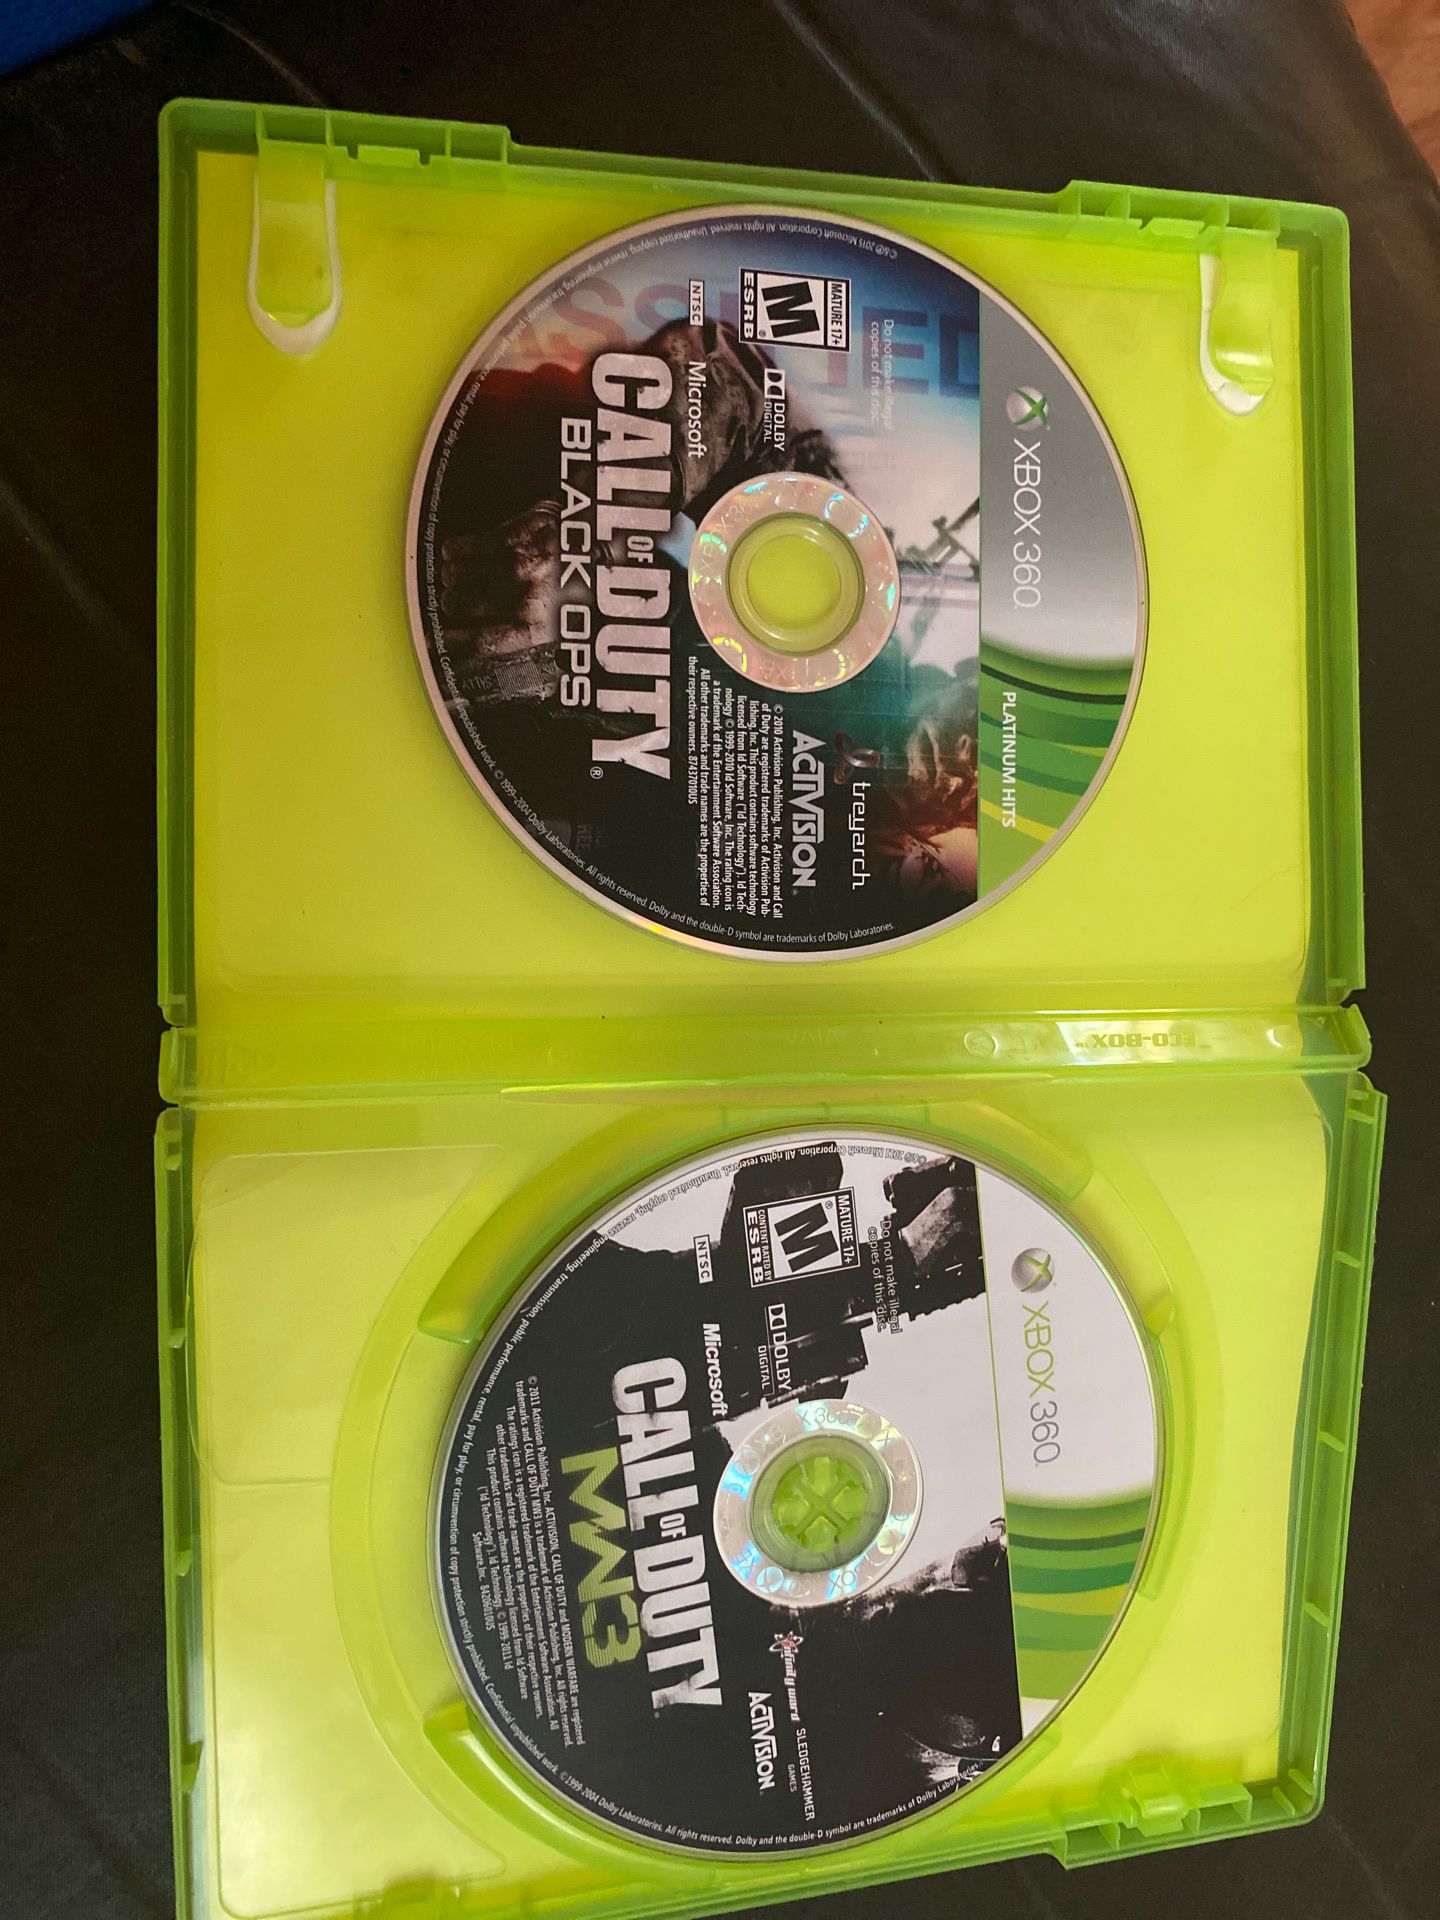 MW3 + BO1 Xbox 360 game discs